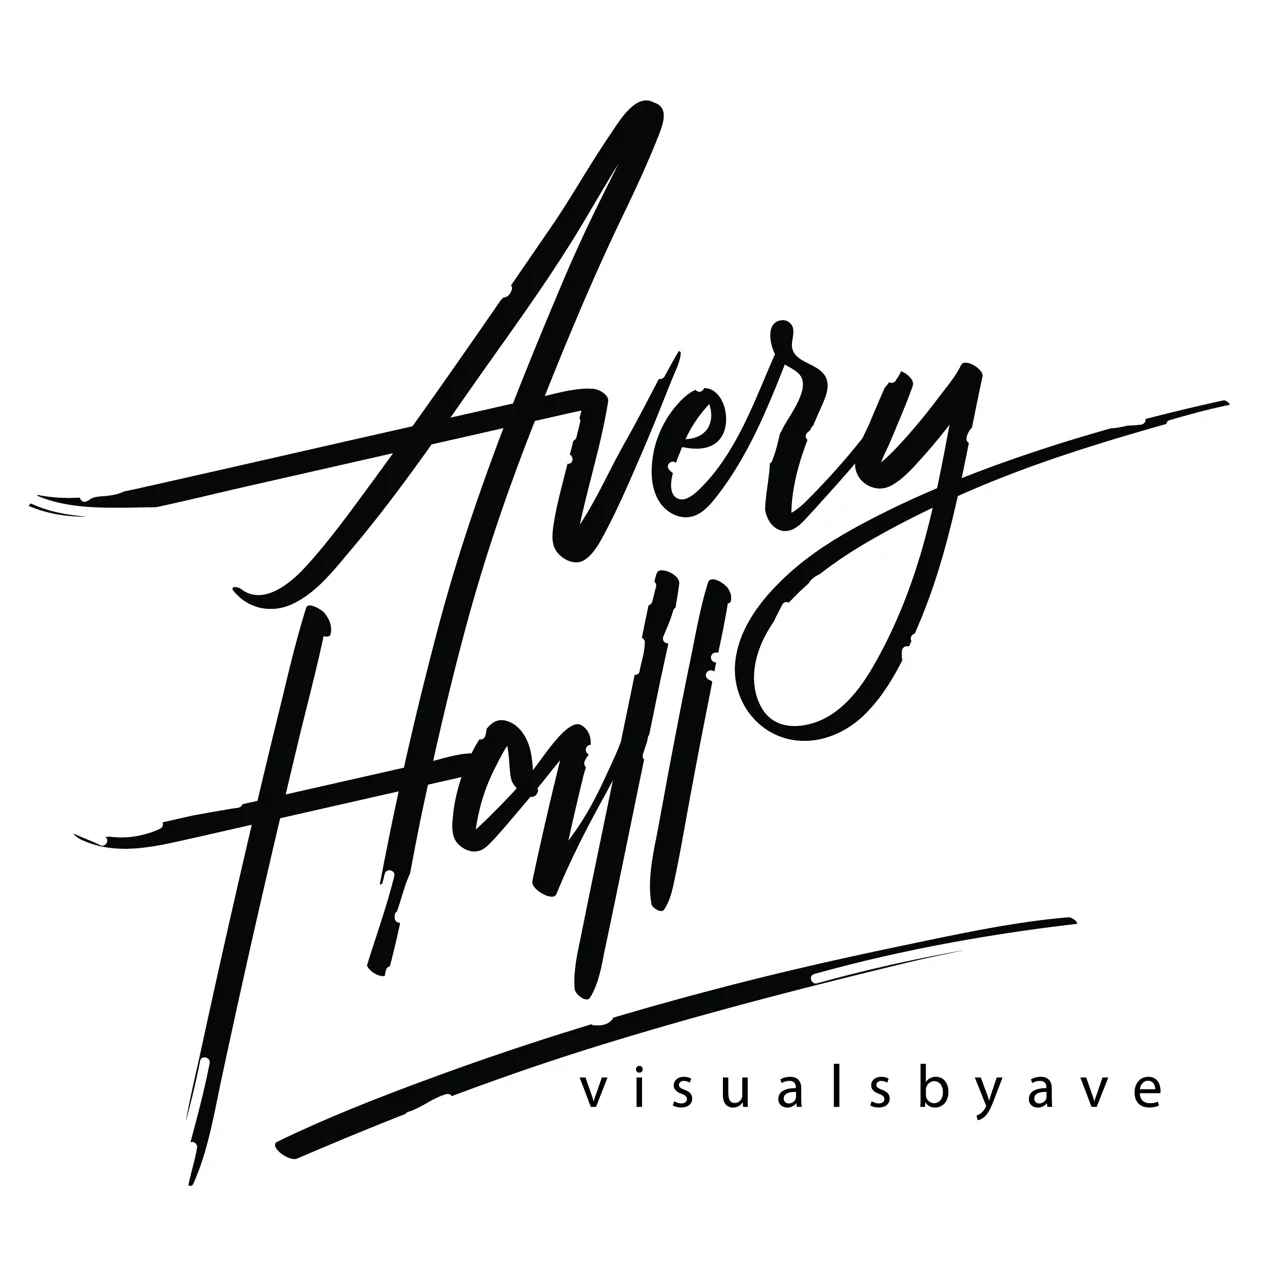 Avery Hall